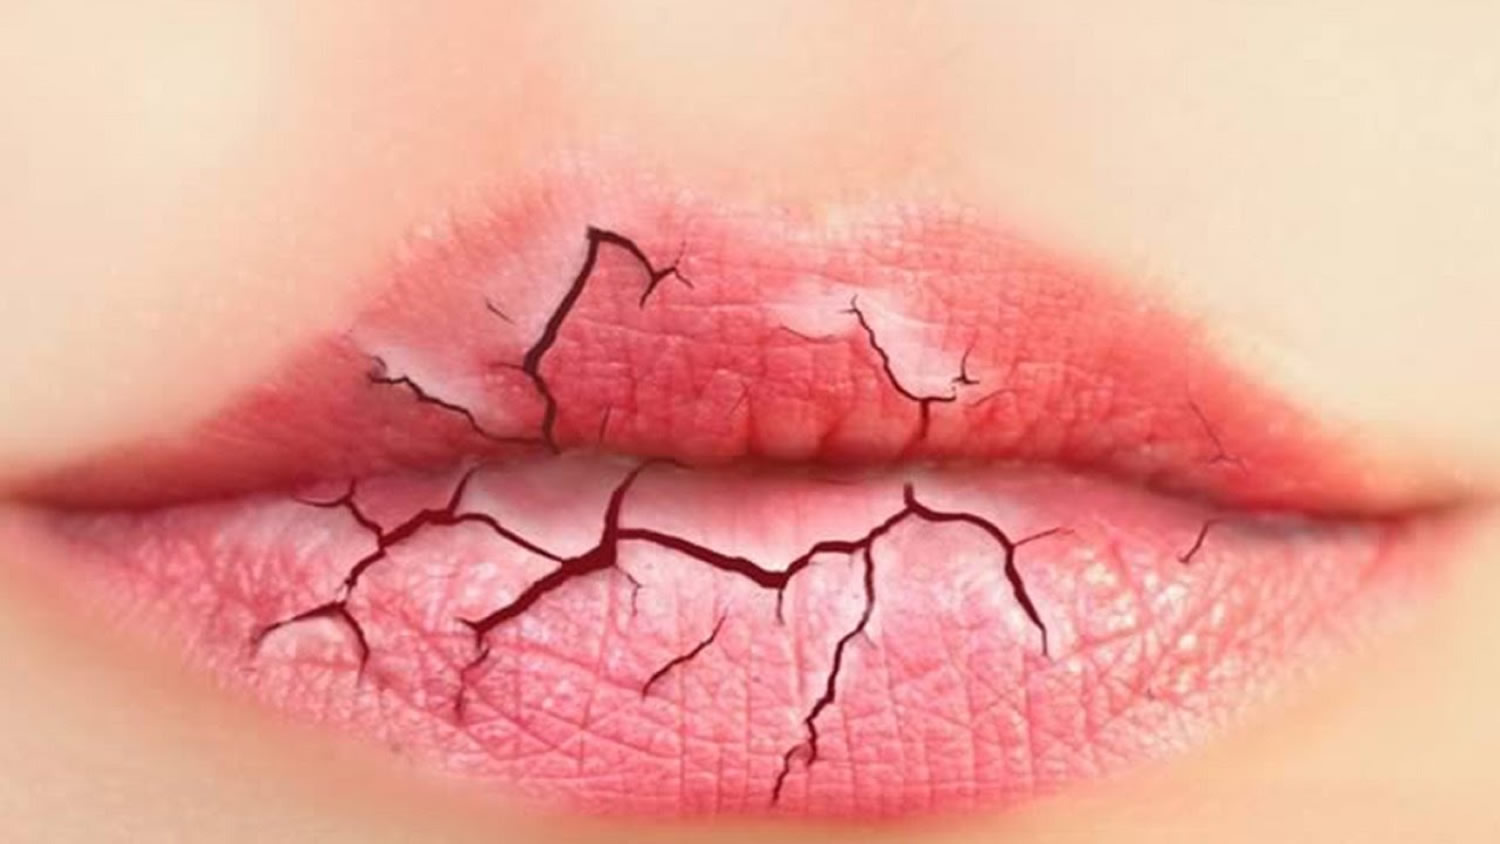 Mulut Kering & Merekah? Ini 8 Tips Mudah Untuk Korang Dapatkan Bibir Yang Memukau